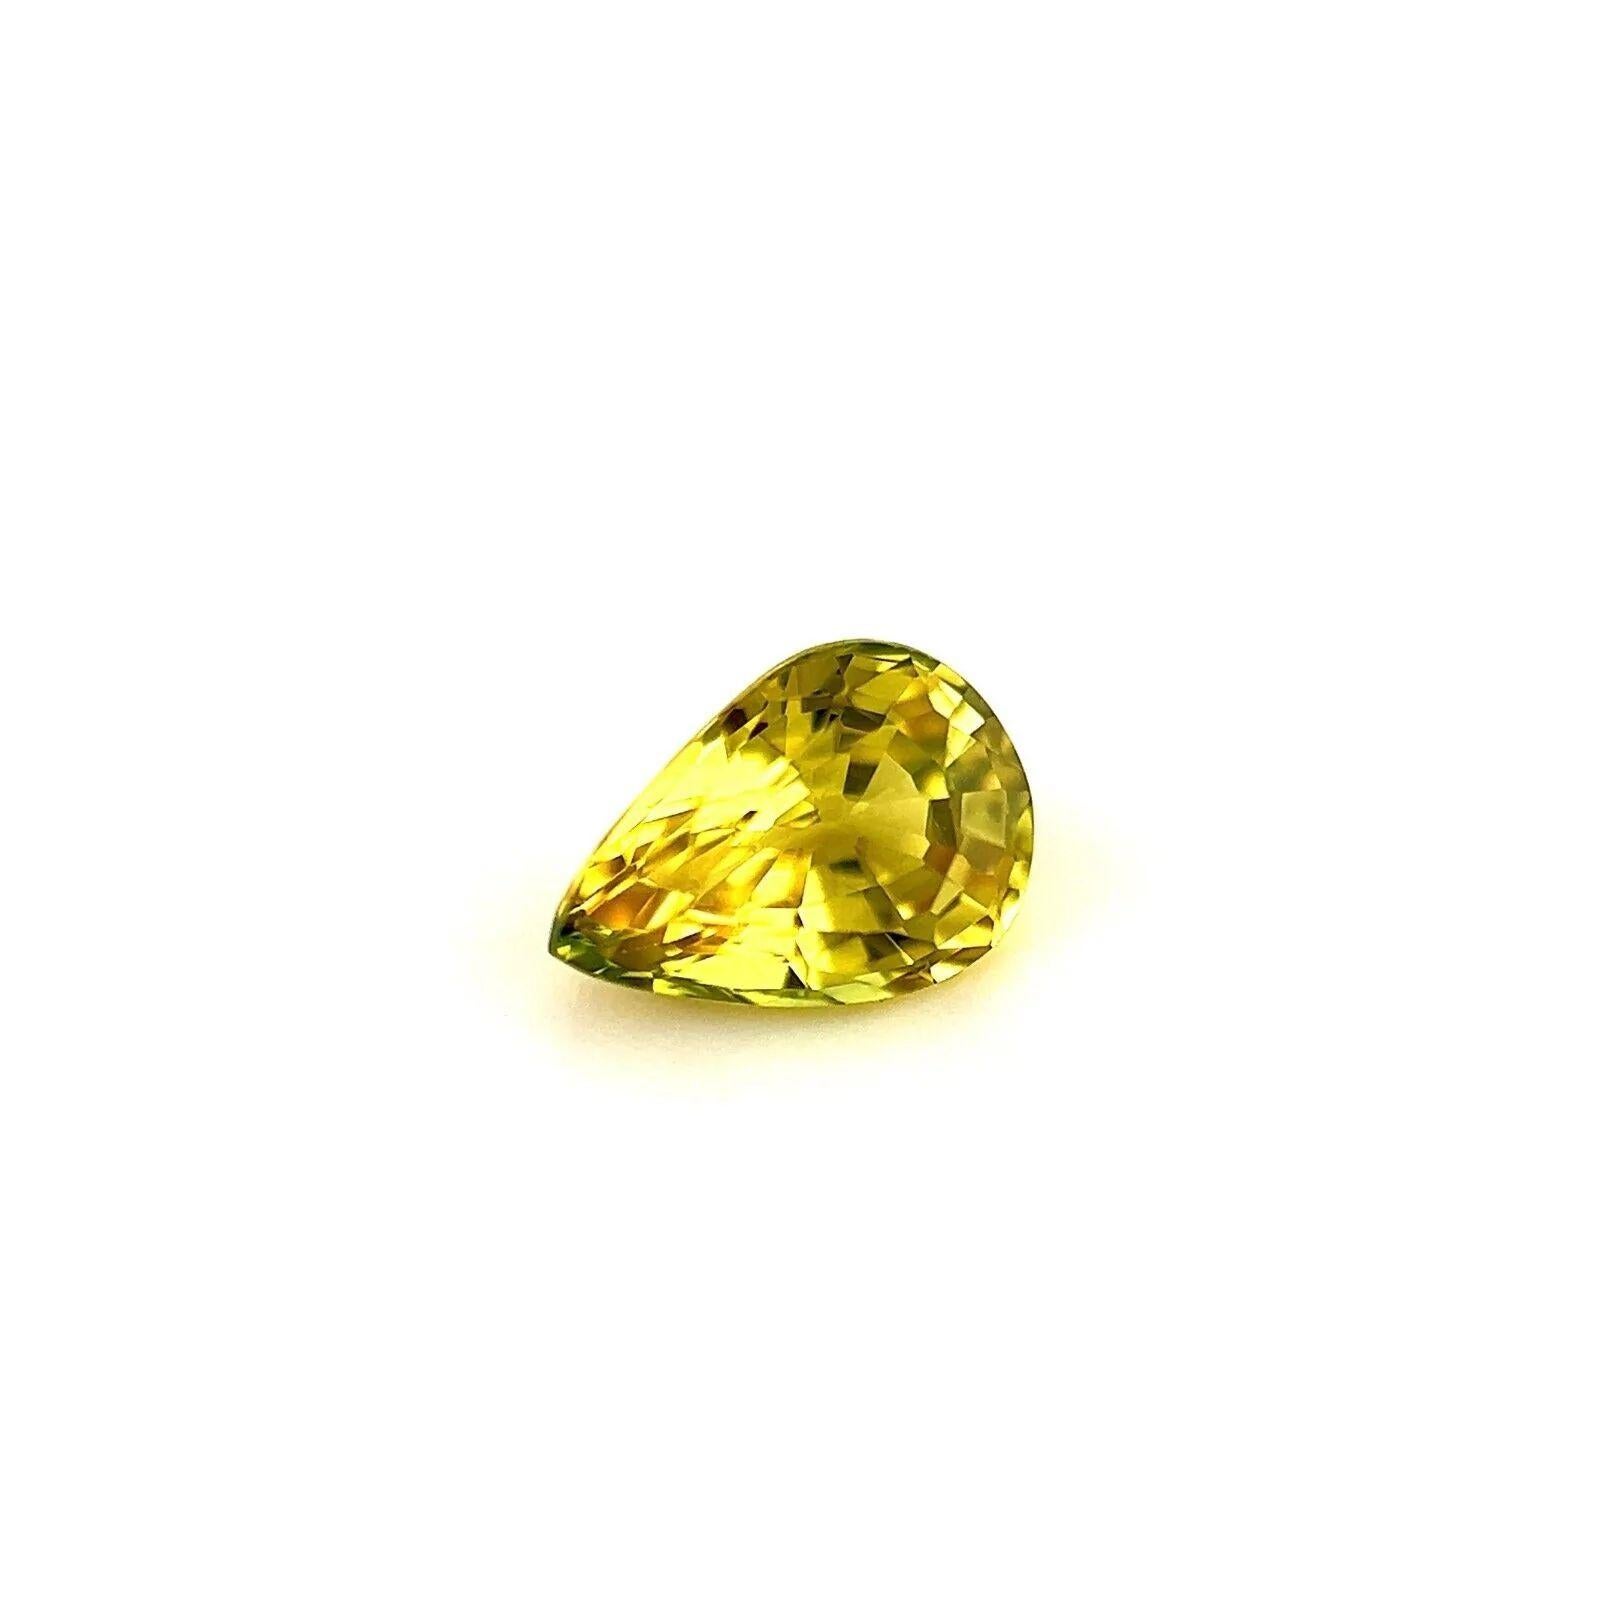 Feiner australischer Natursaphir Lebendig Gelb Birnenschliff Edelstein 6.3x4.5mm VS

Natürlicher lebendiger gelber Saphir Edelstein.
0,67 Karat mit einer schönen lebhaften gelben Farbe und einem ausgezeichneten Birnen-Tränenschliff.
Auch hat gute